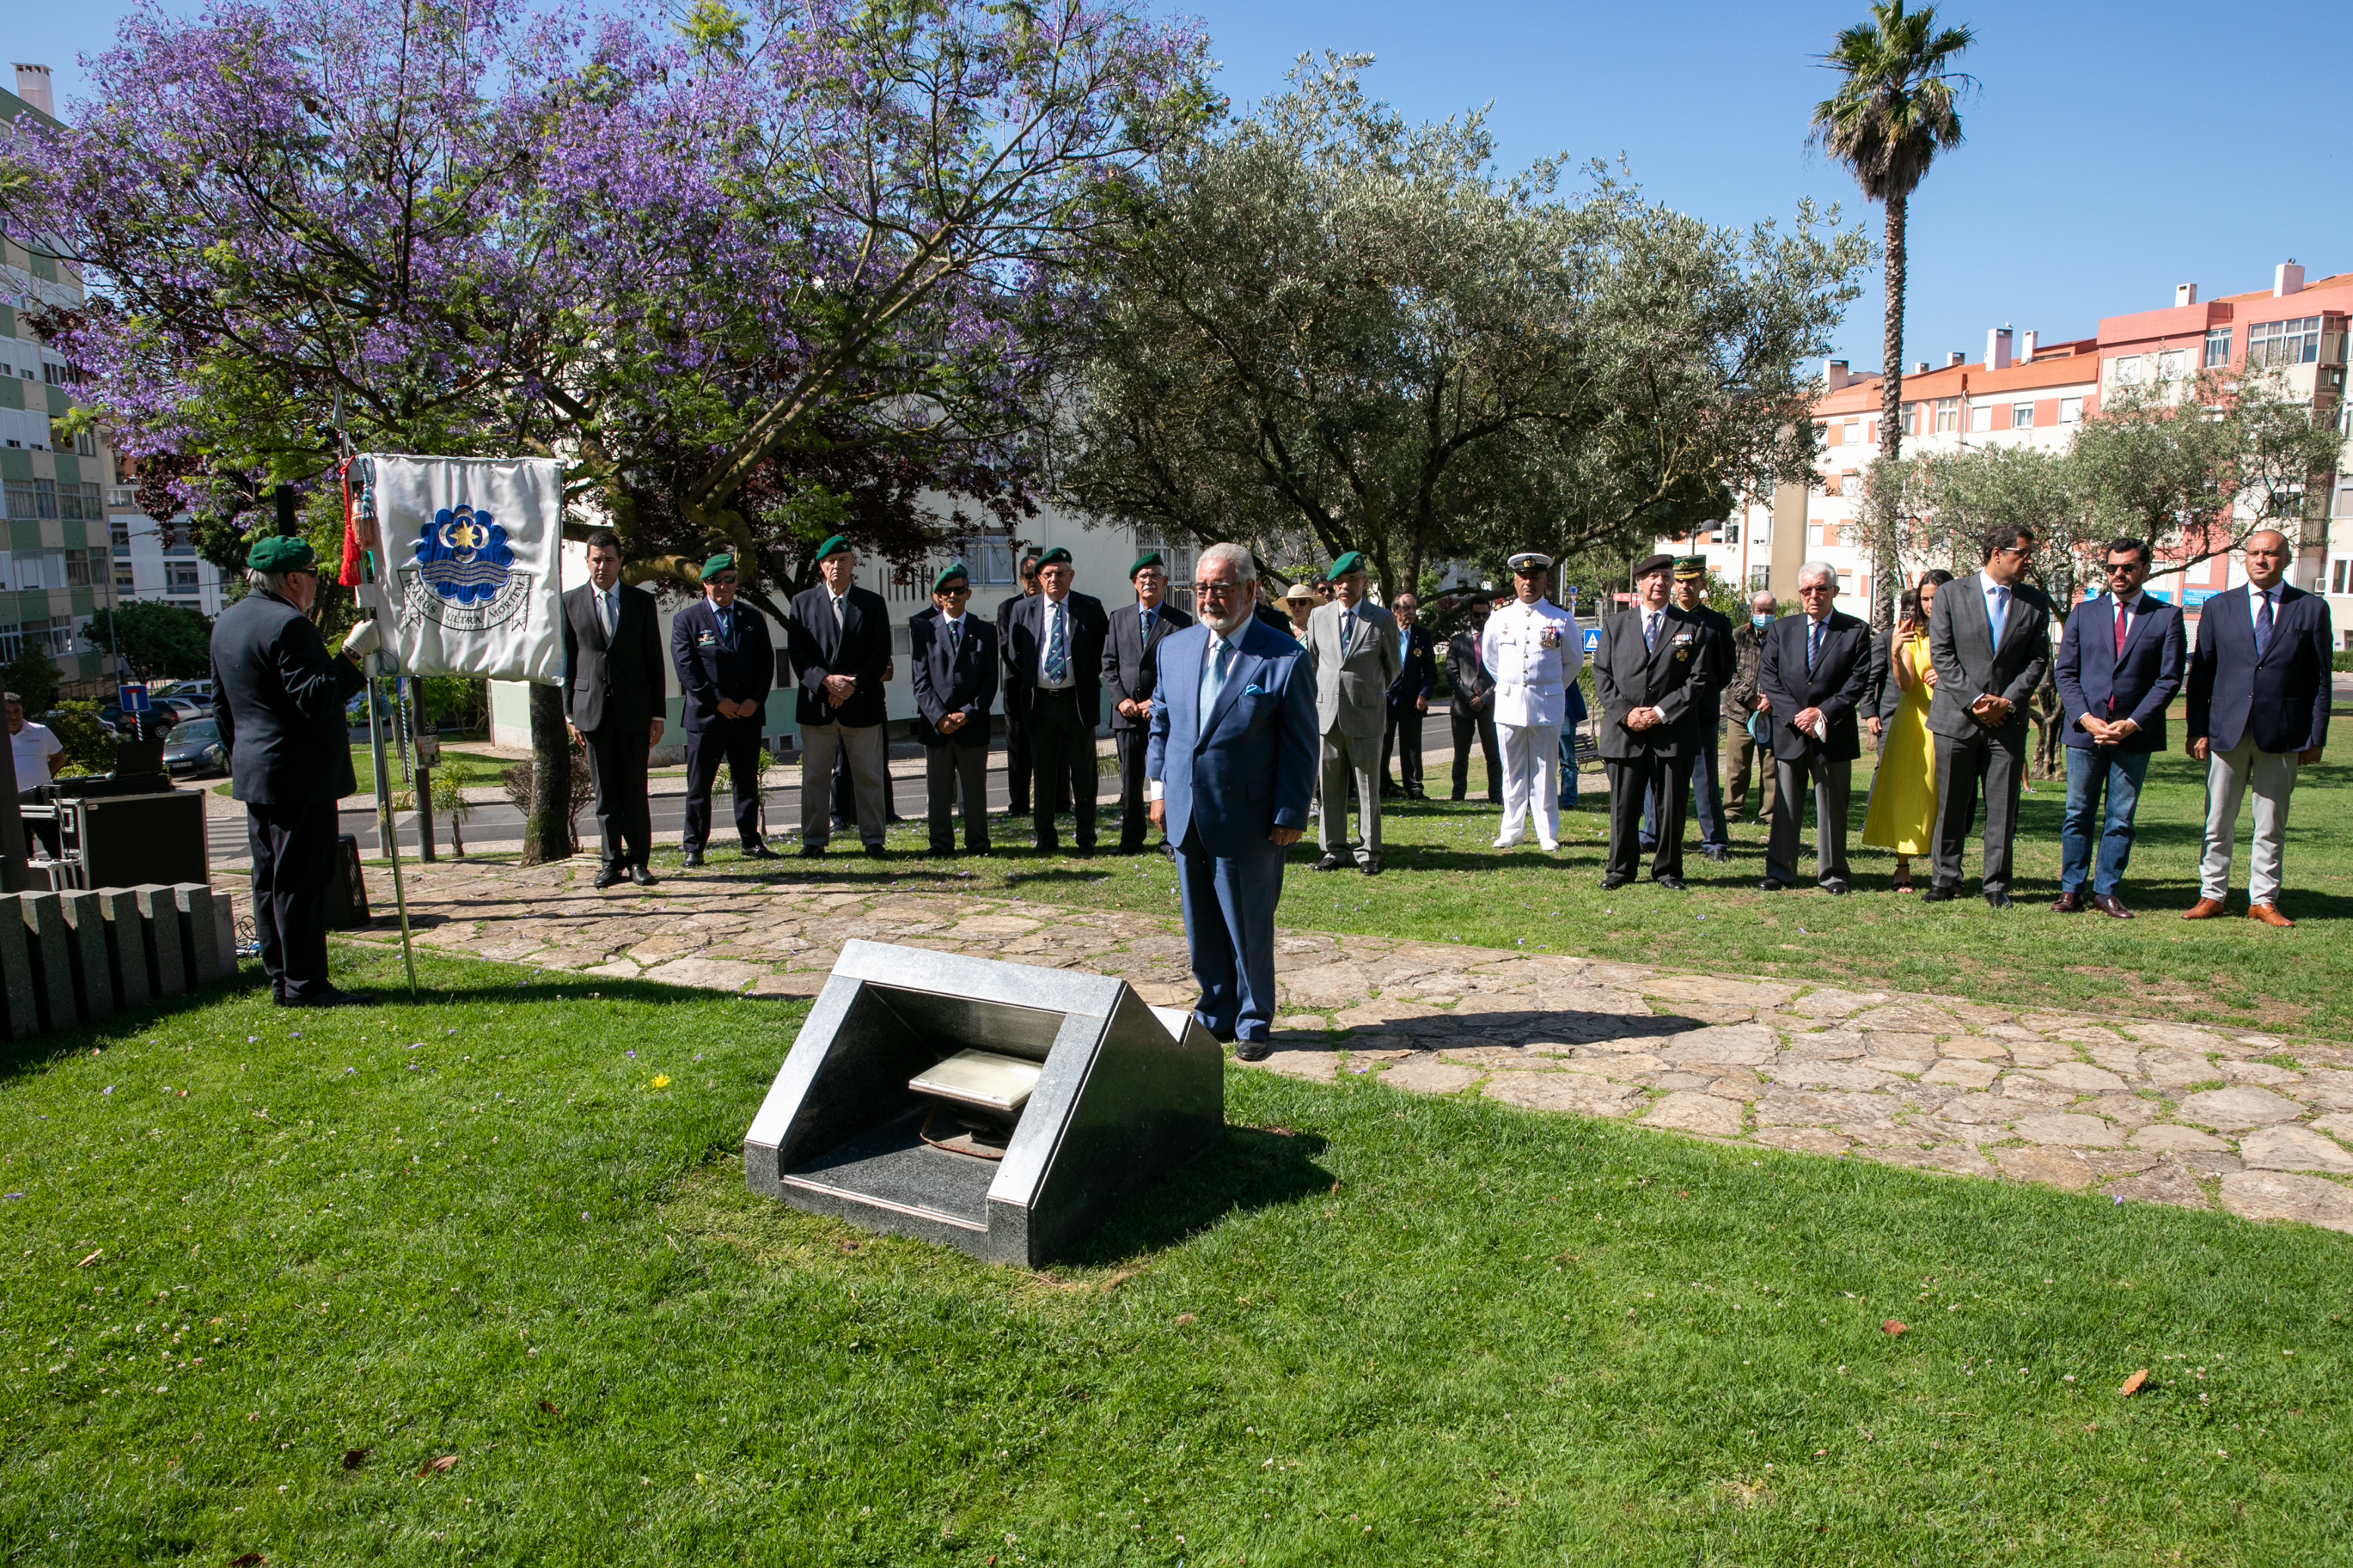 Presidente da Câmara Municipal de Oeiras no Jardim do Ultramar na homenagem realizadas aos mortos da Guerra do Ultramar